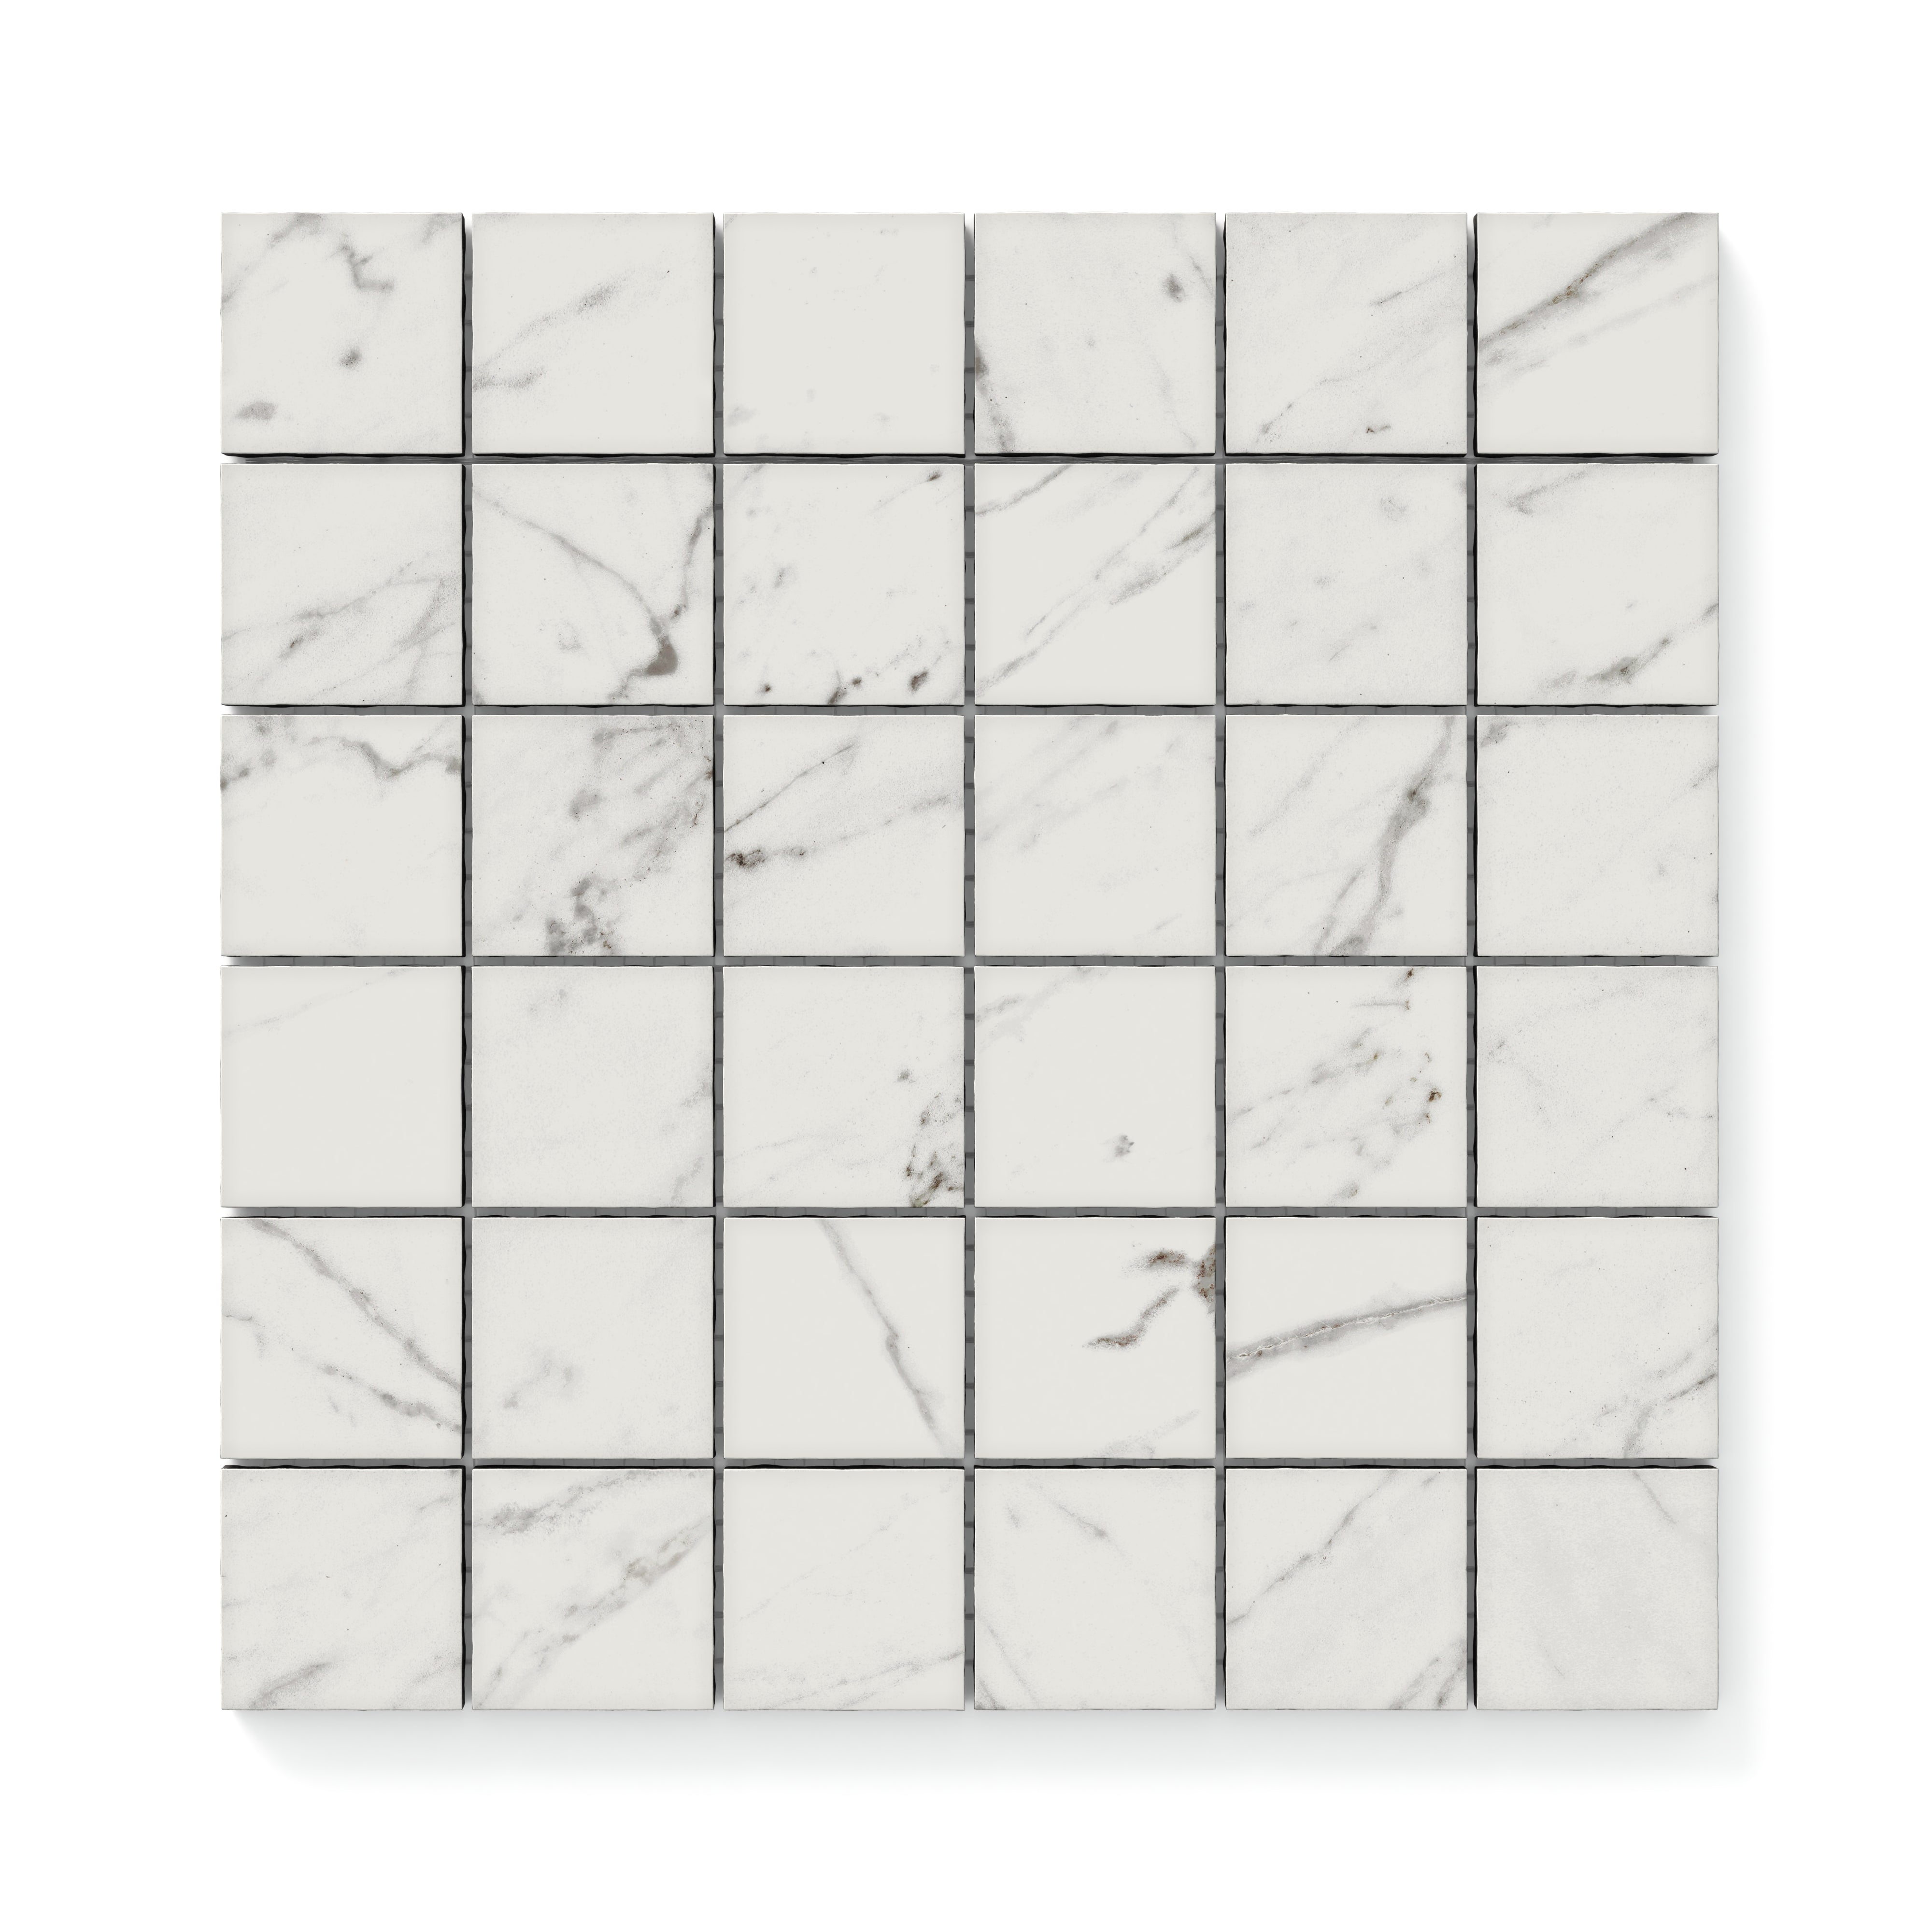 Blair 2x2 Matte Porcelain Mosaic Tile in White Carrara